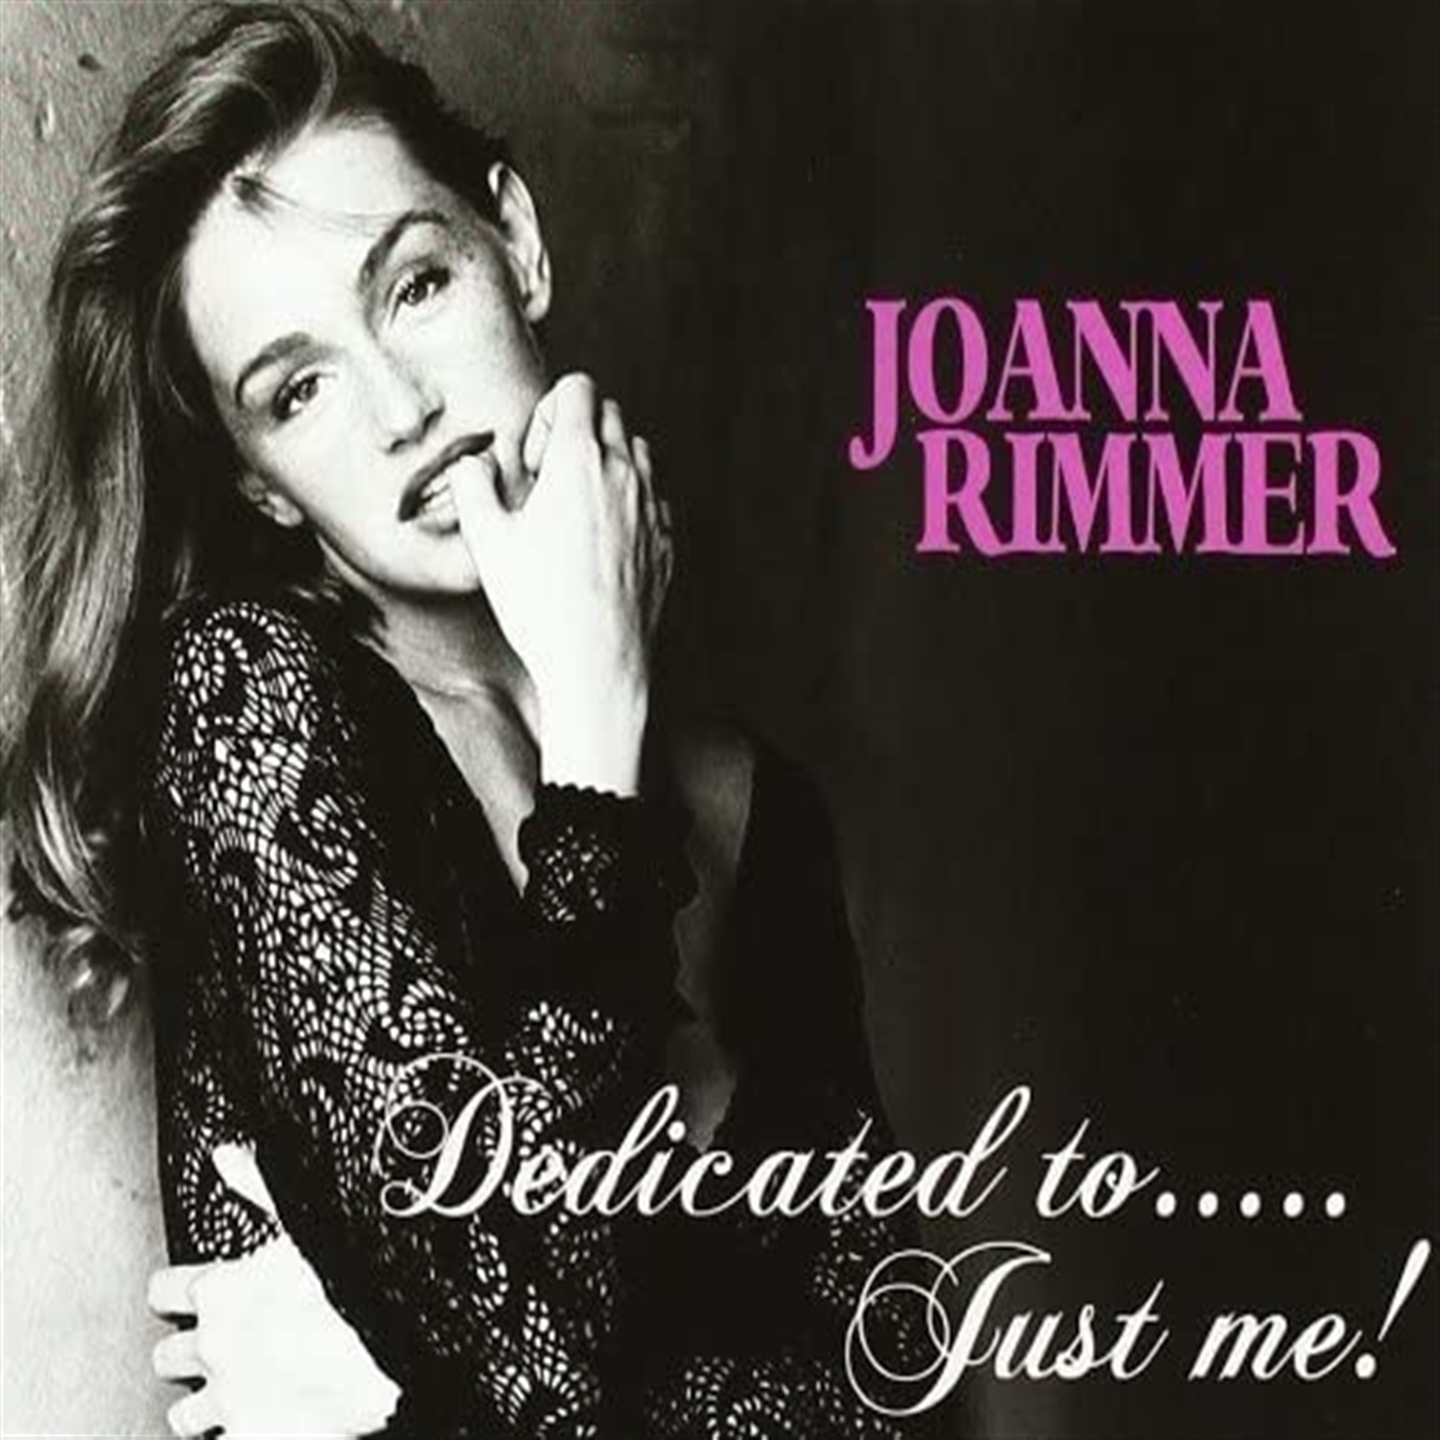 Joanna Rimmer - Dedicated To... Just Me! - Imagen 1 de 1